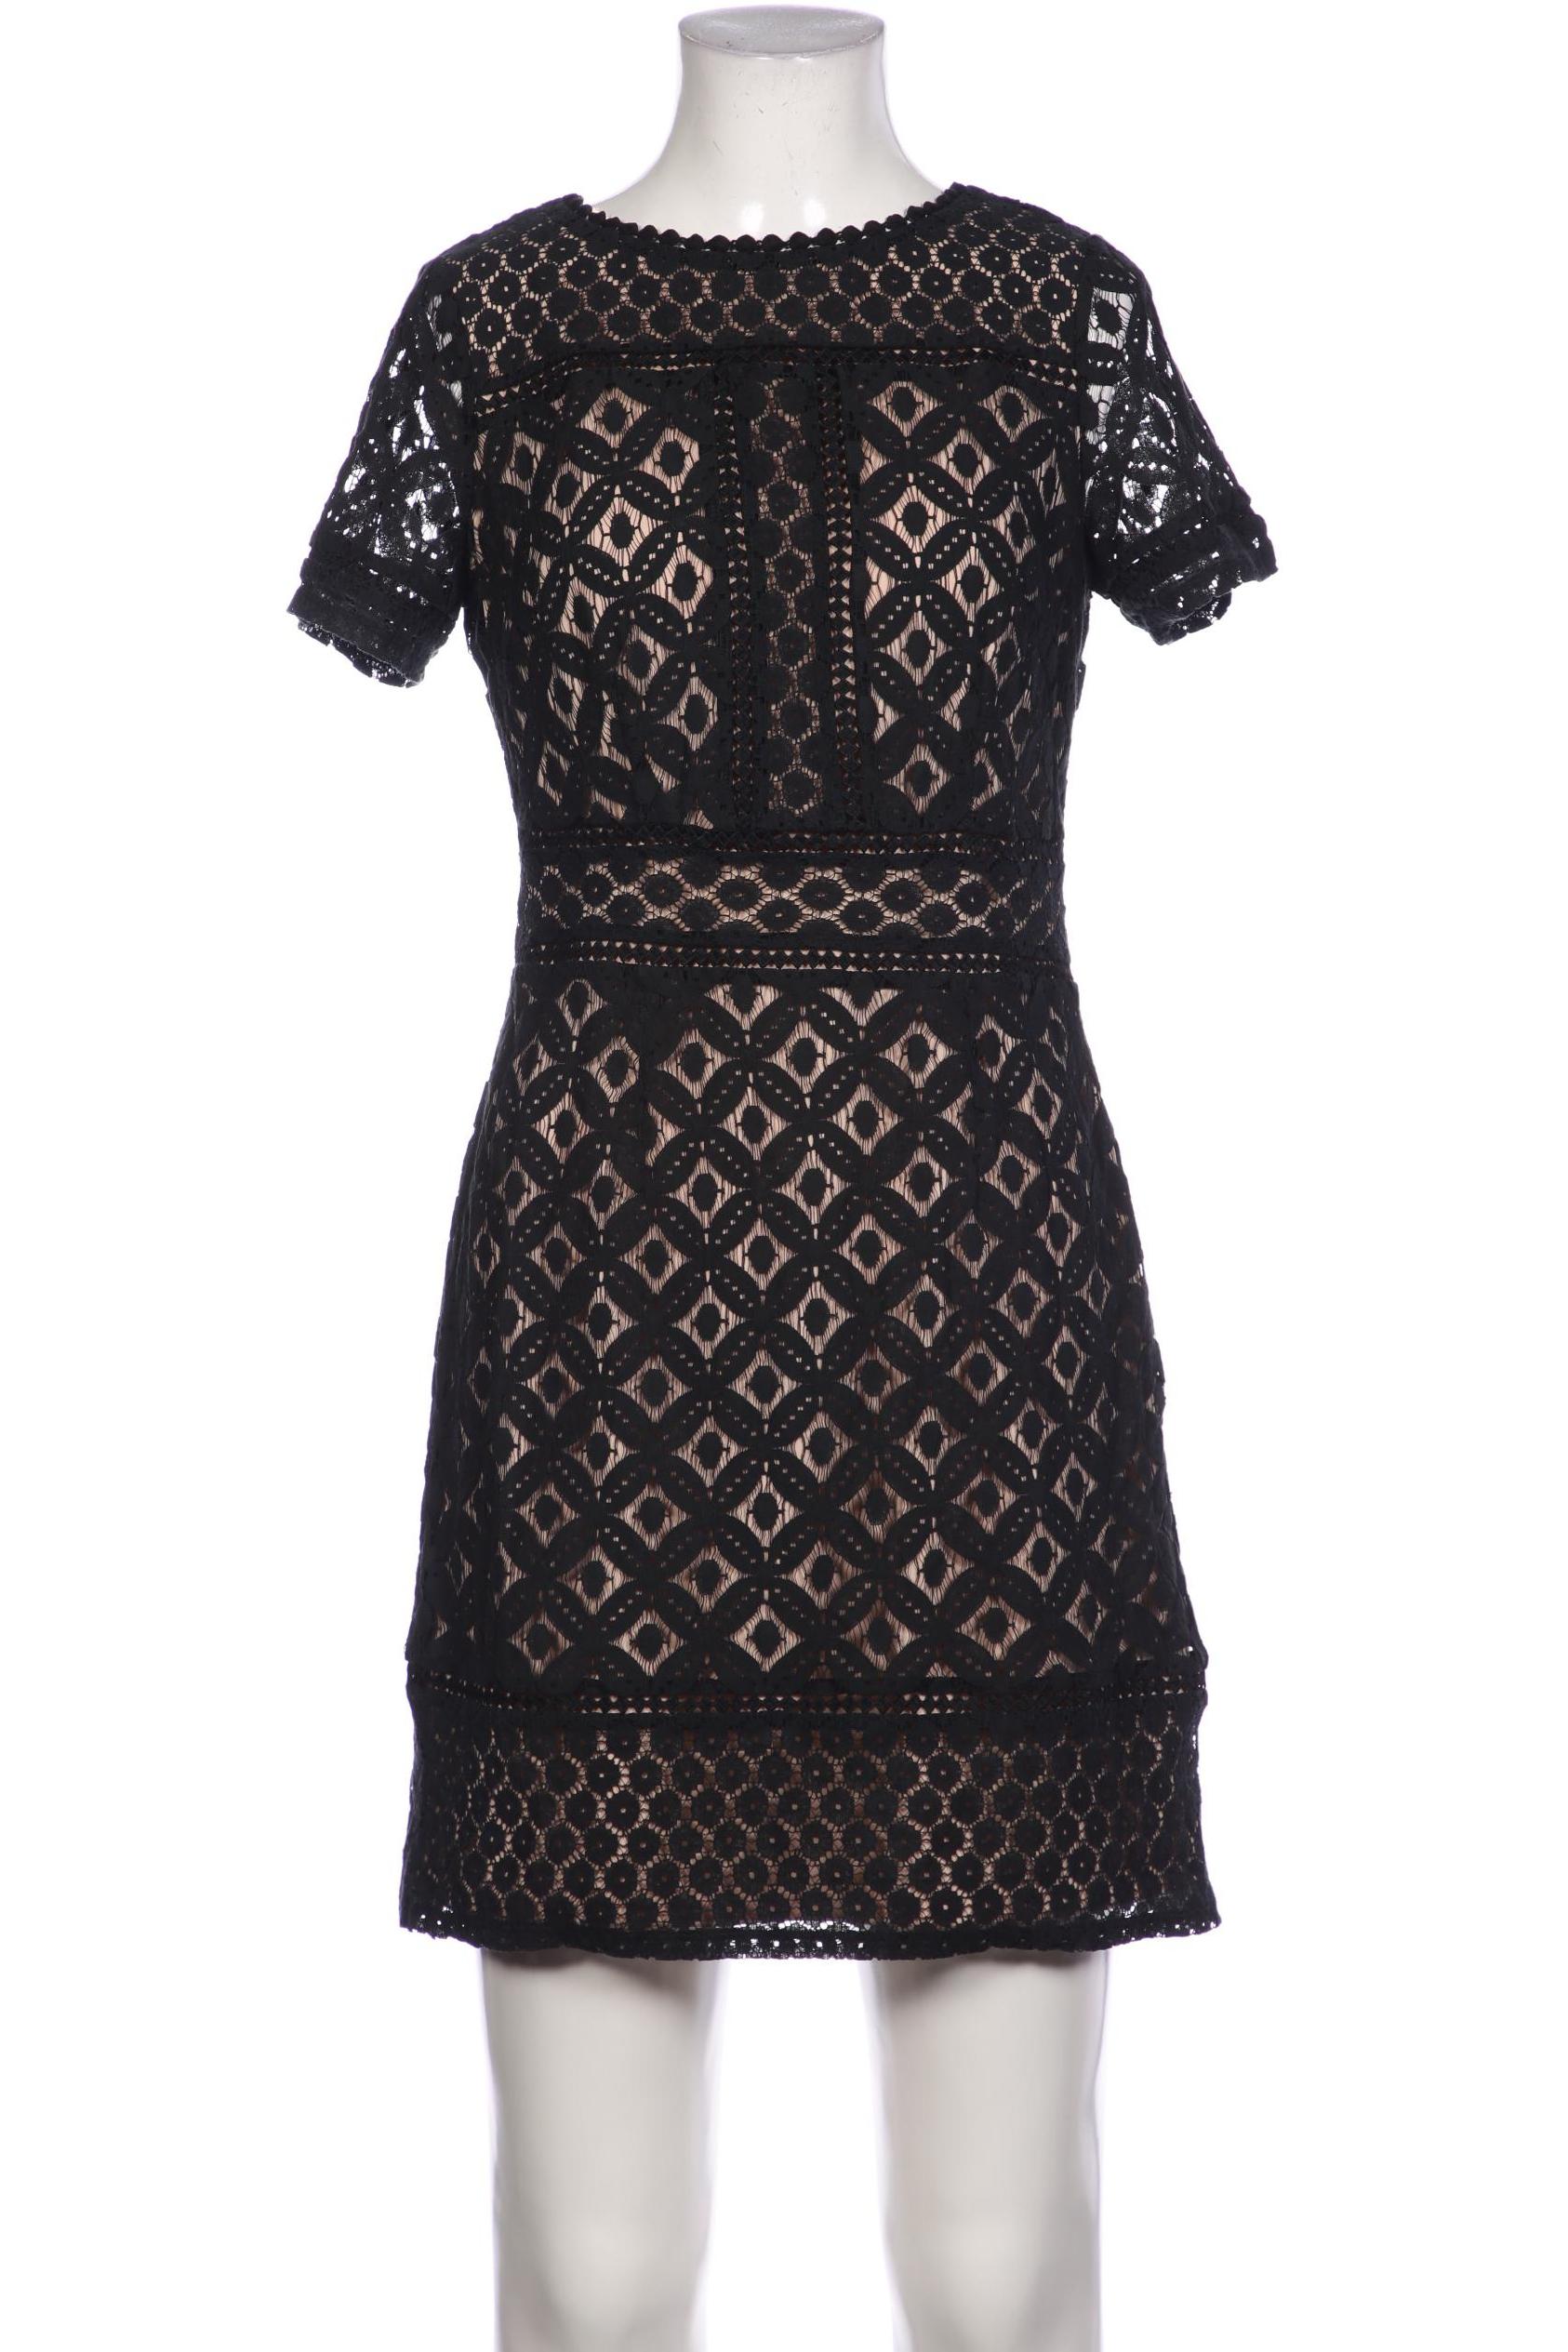 oasis Damen Kleid, schwarz, Gr. 36 von Oasis